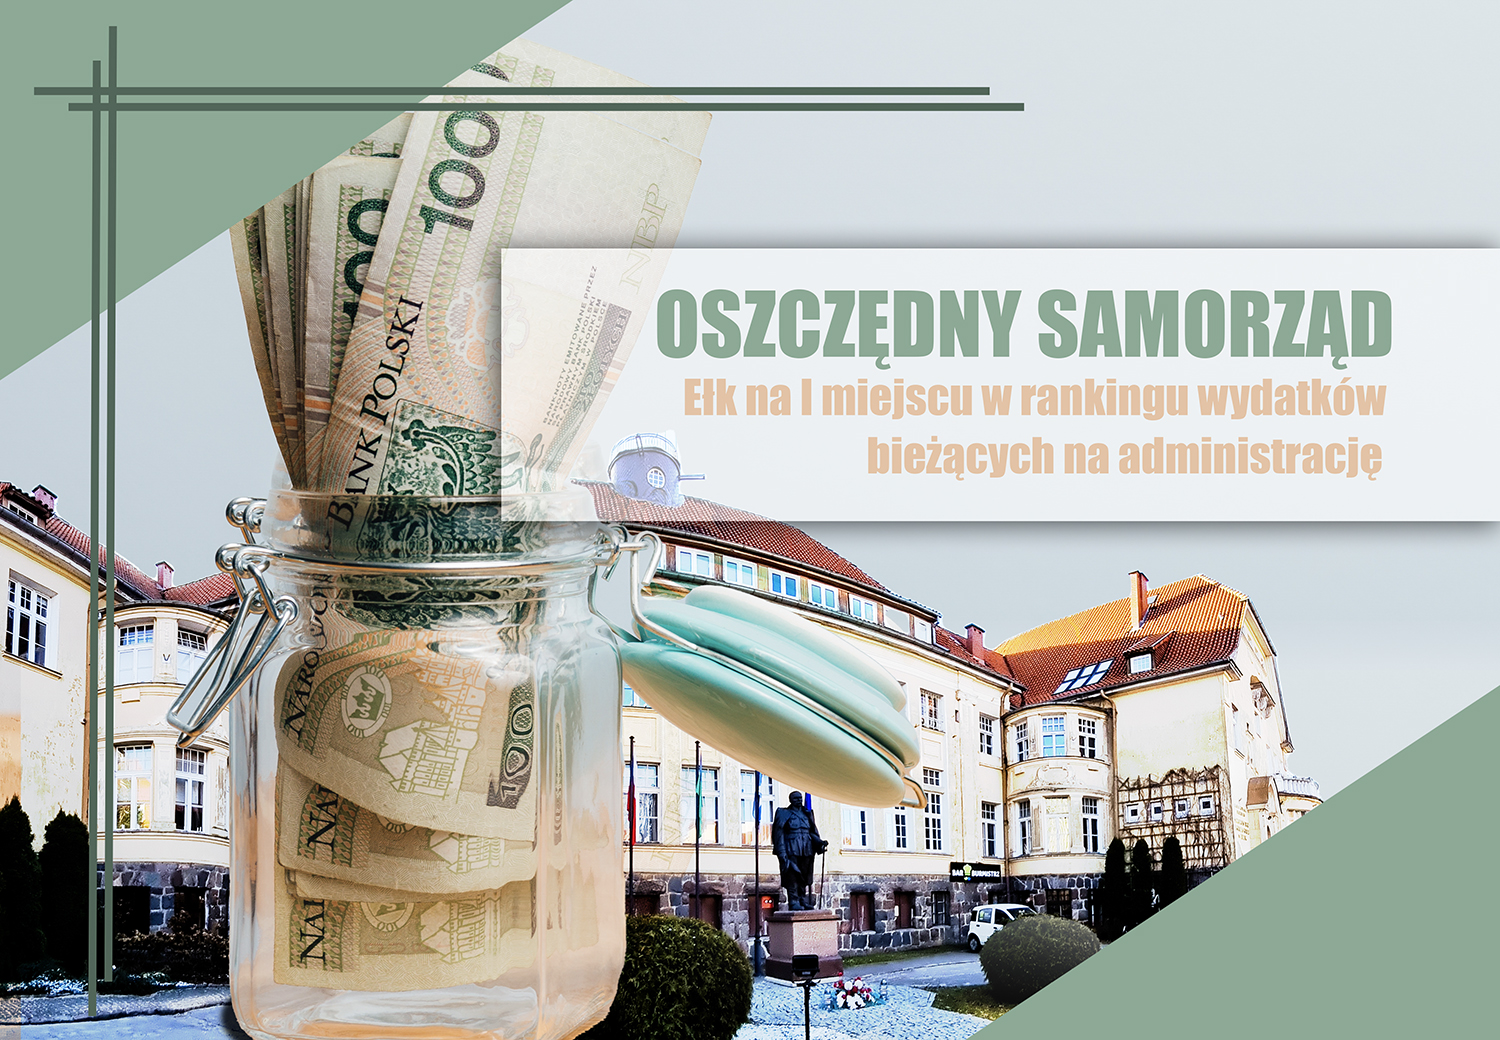 Wirtschaftliche Kommunalverwaltung – Ełk auf dem ersten Platz im Ranking der laufenden Verwaltungsausgaben